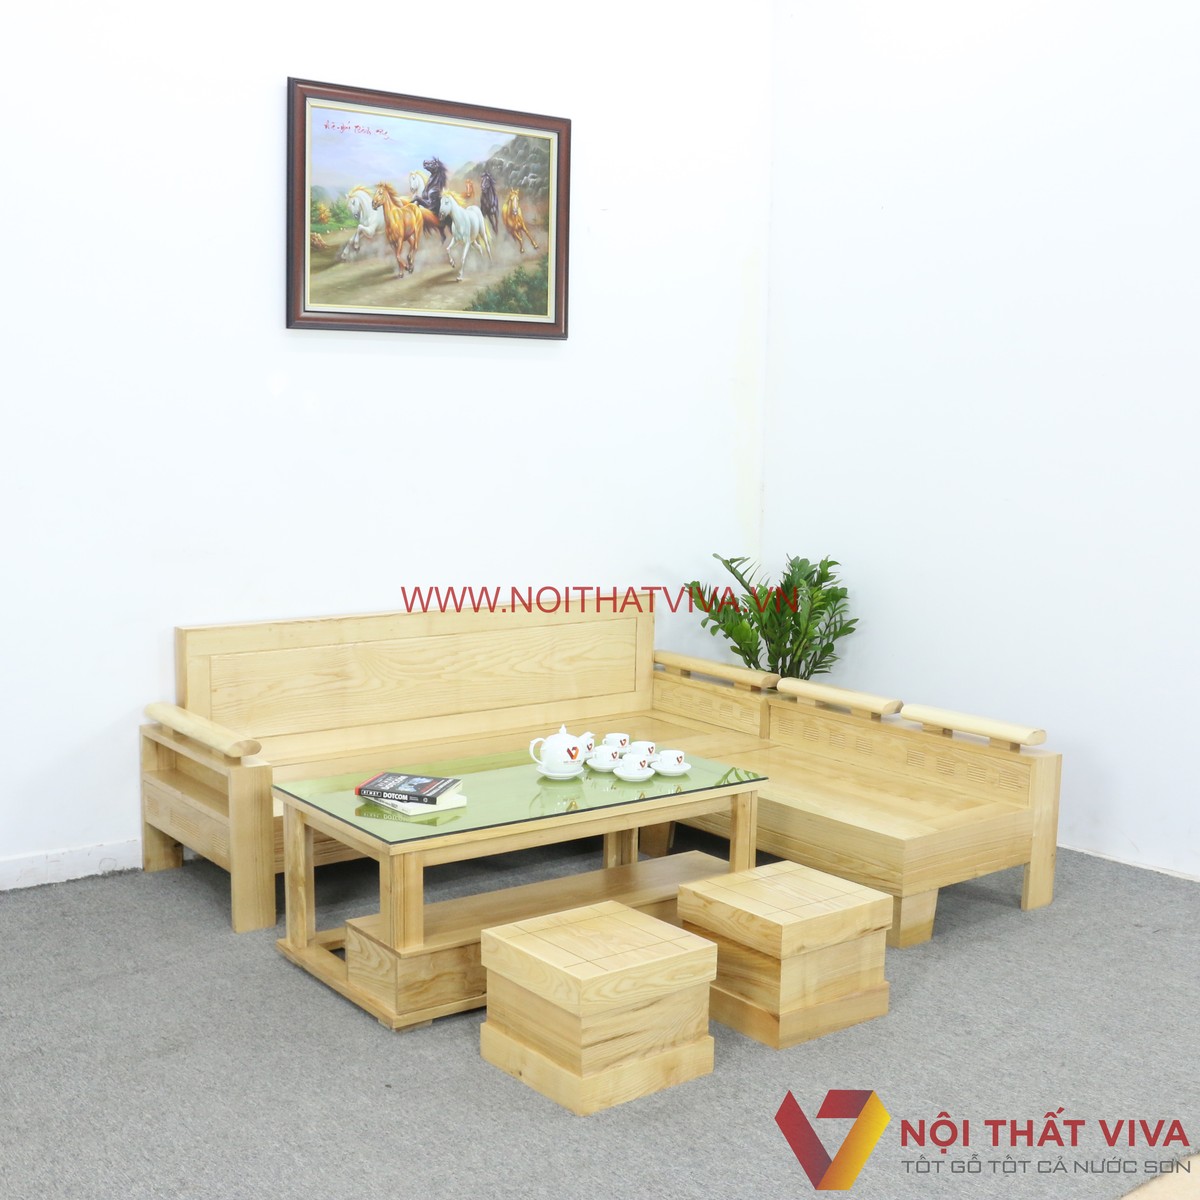 Bộ sofa phòng khách gỗ sồi Nga giá rẻ là sự lựa chọn hoàn hảo cho những ai đang tìm kiếm một bộ sofa đơn giản nhưng không kém phần sang trọng. Với chất liệu gỗ sồi Nga cao cấp và thiết kế đơn giản tinh tế, bộ sofa này sẽ tạo nên một không gian phòng khách thật sự hoàn hảo.